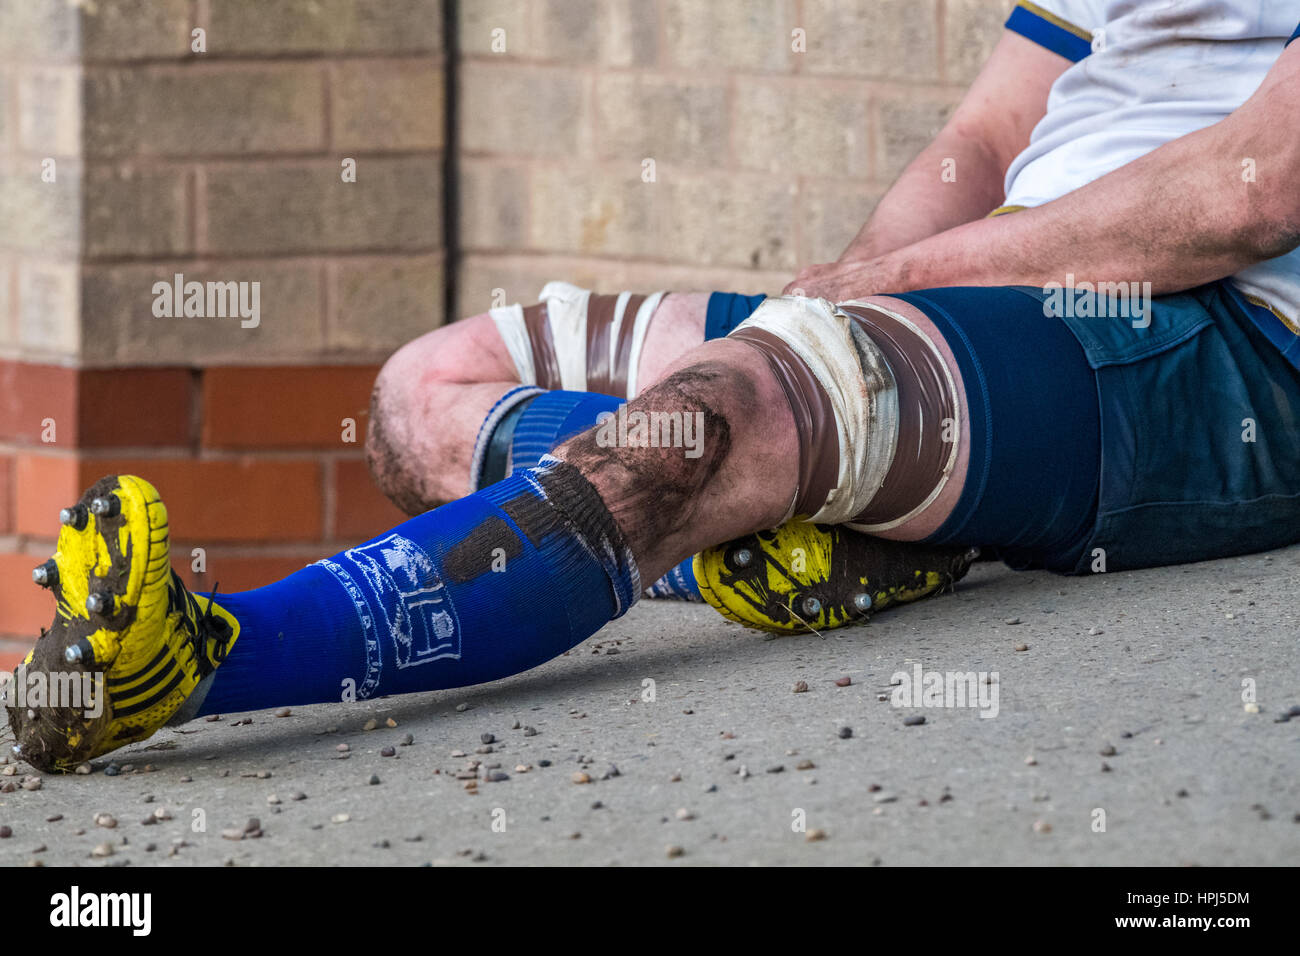 Rugby-union-Spieler ruht sein verletzte Bein bei einem Rugby-Spiel... Stockfoto